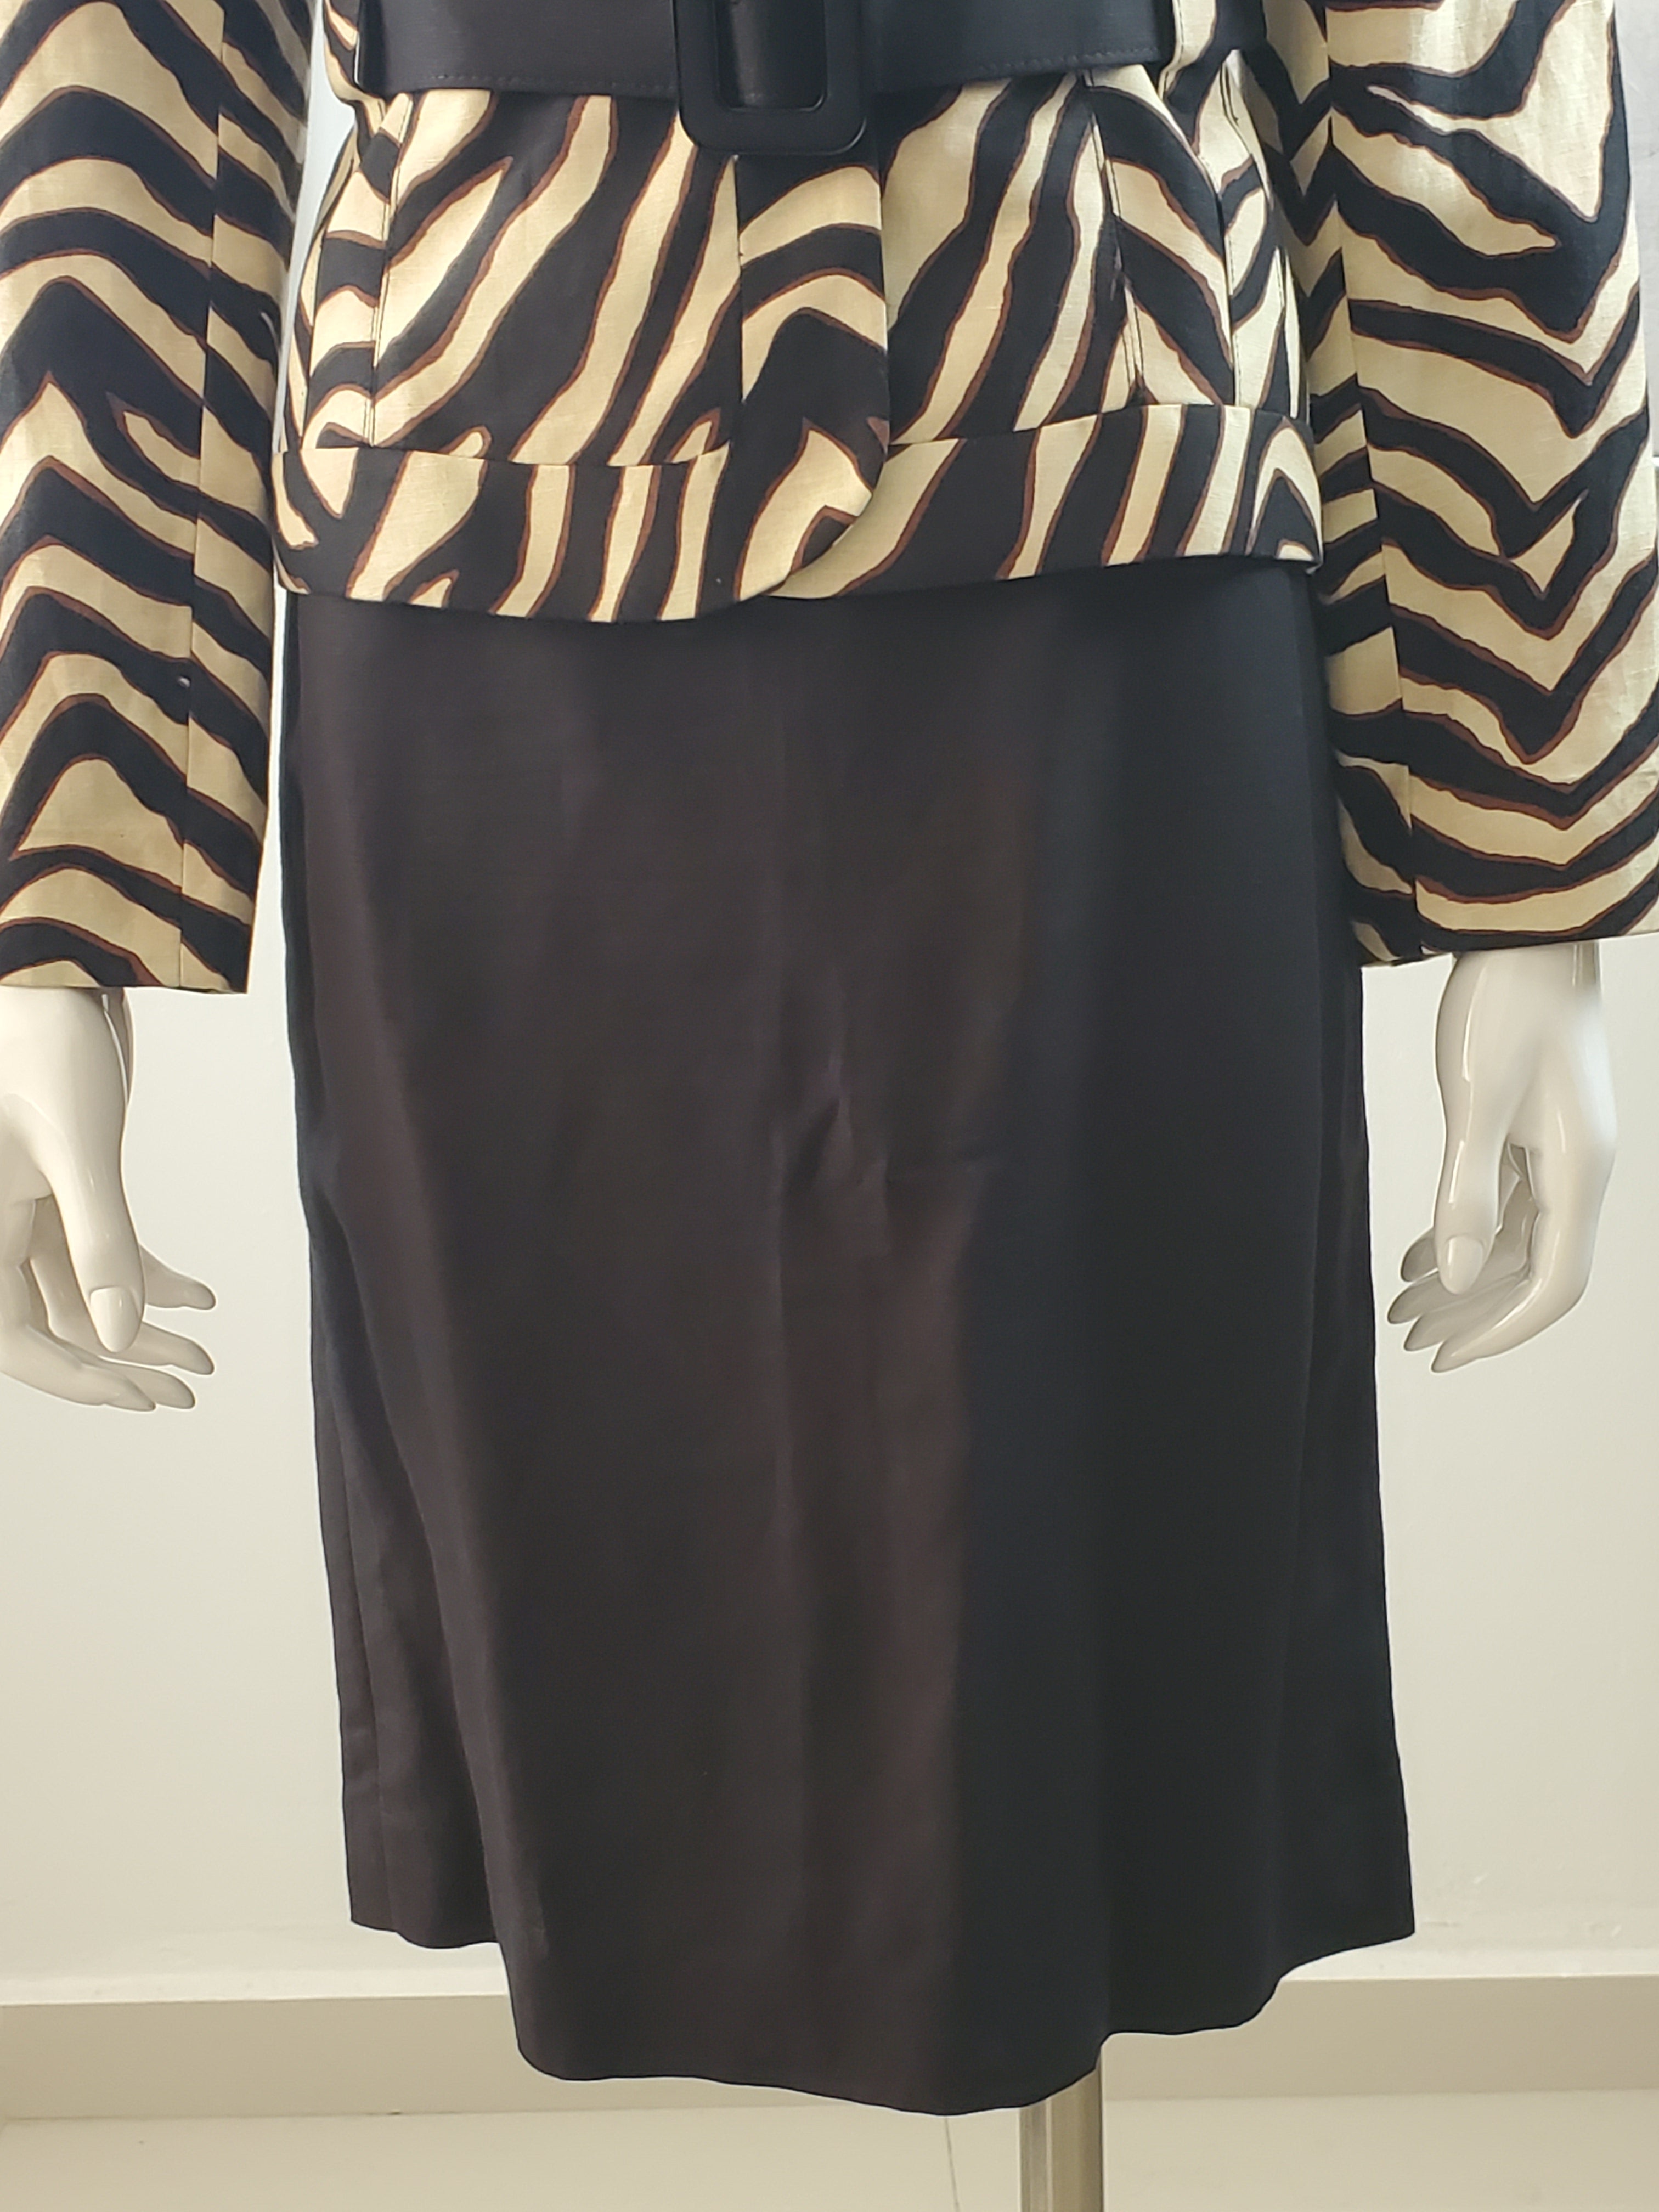 Women's Zebra Black and Beige Suit